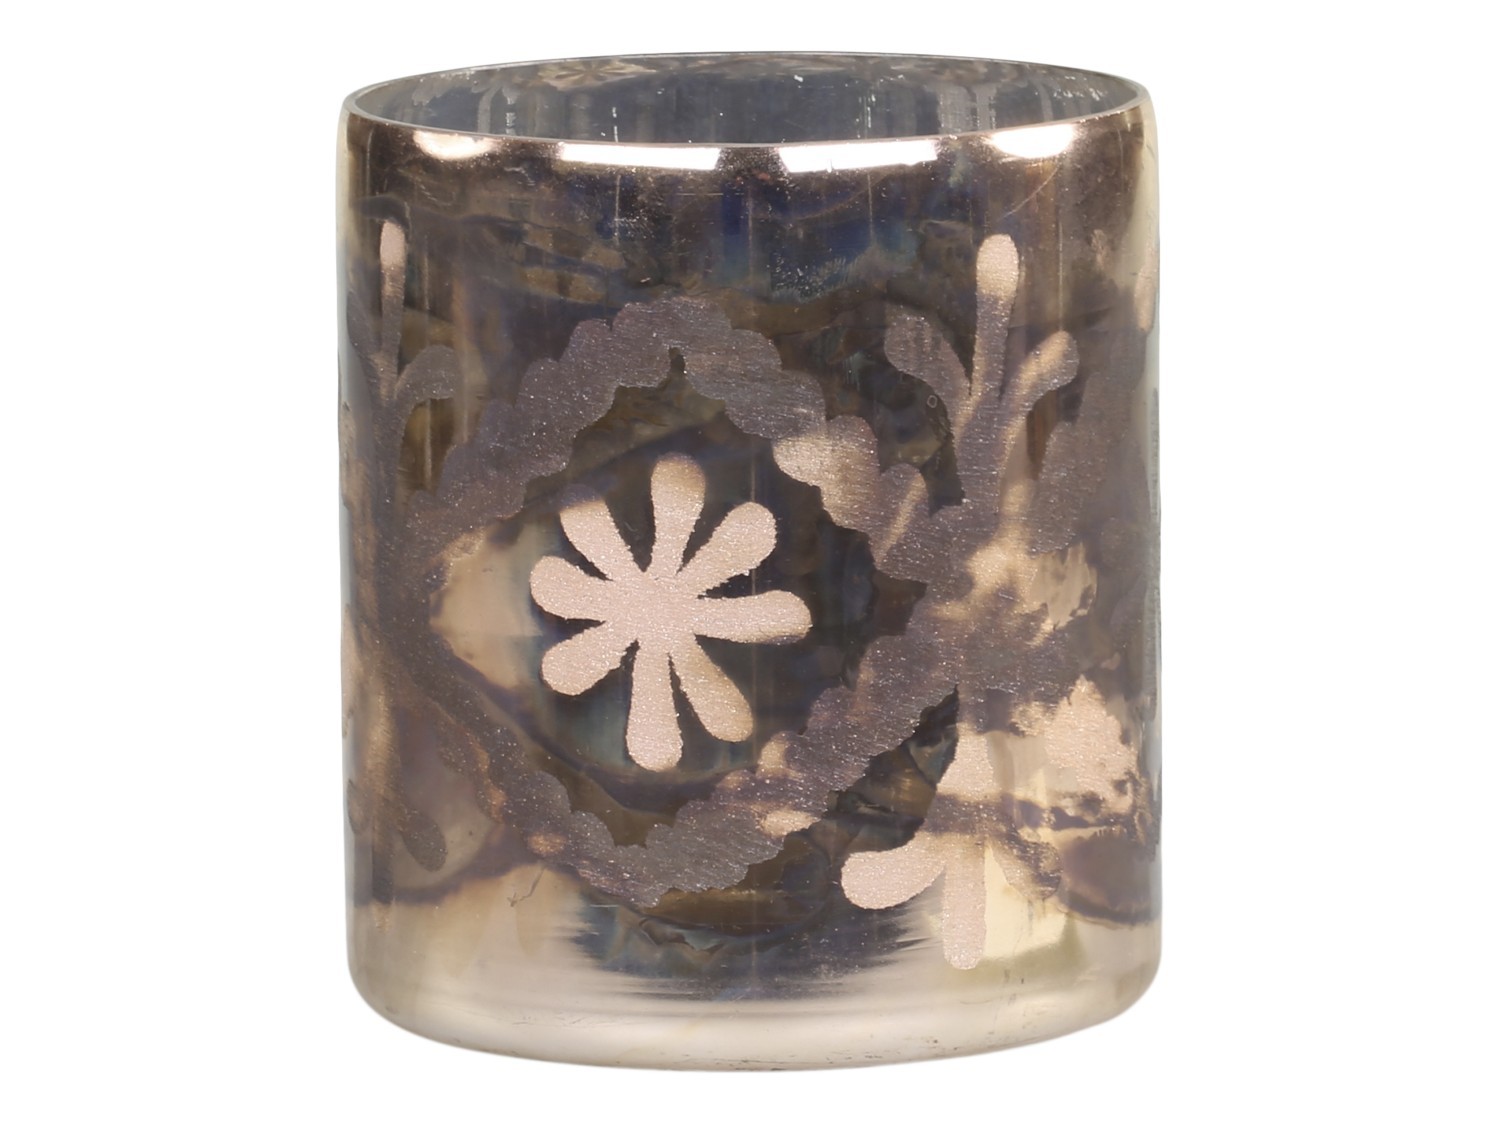 Mocca antik skleněný svícen na čajovou svíčku Grindi - Ø 9*10 cm Chic Antique